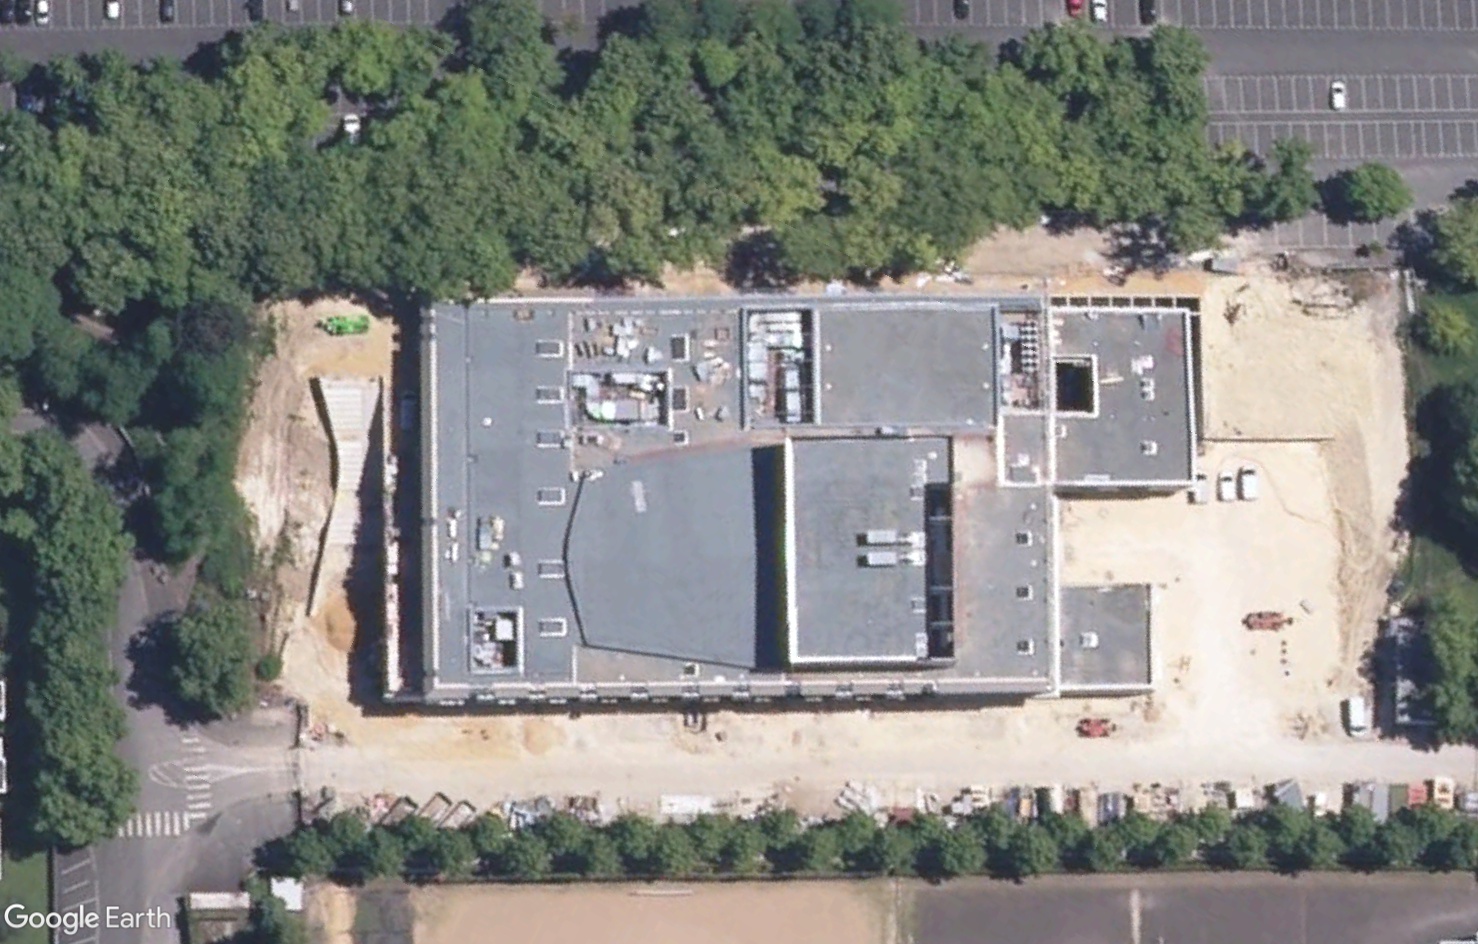 [Bientôt visible sur Google Earth] - Future Maison de la Culture Bourges (Cher) Tsge4136